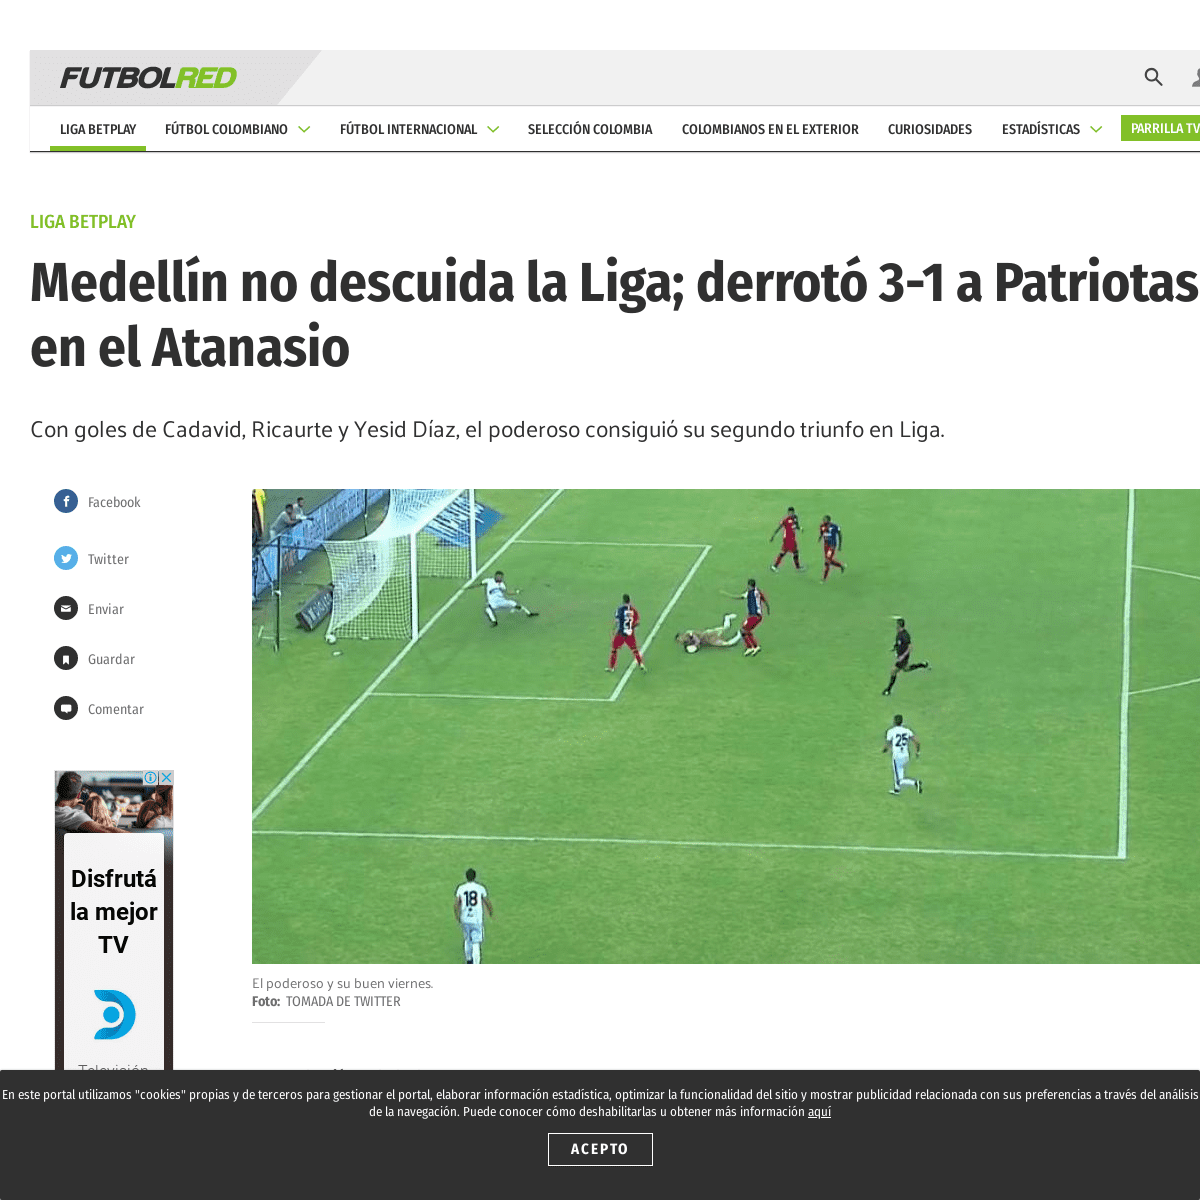 A complete backup of www.futbolred.com/futbol-colombiano/liga-aguila/medellin-vencio-a-patriotas-cronica-goles-y-calificaciones-